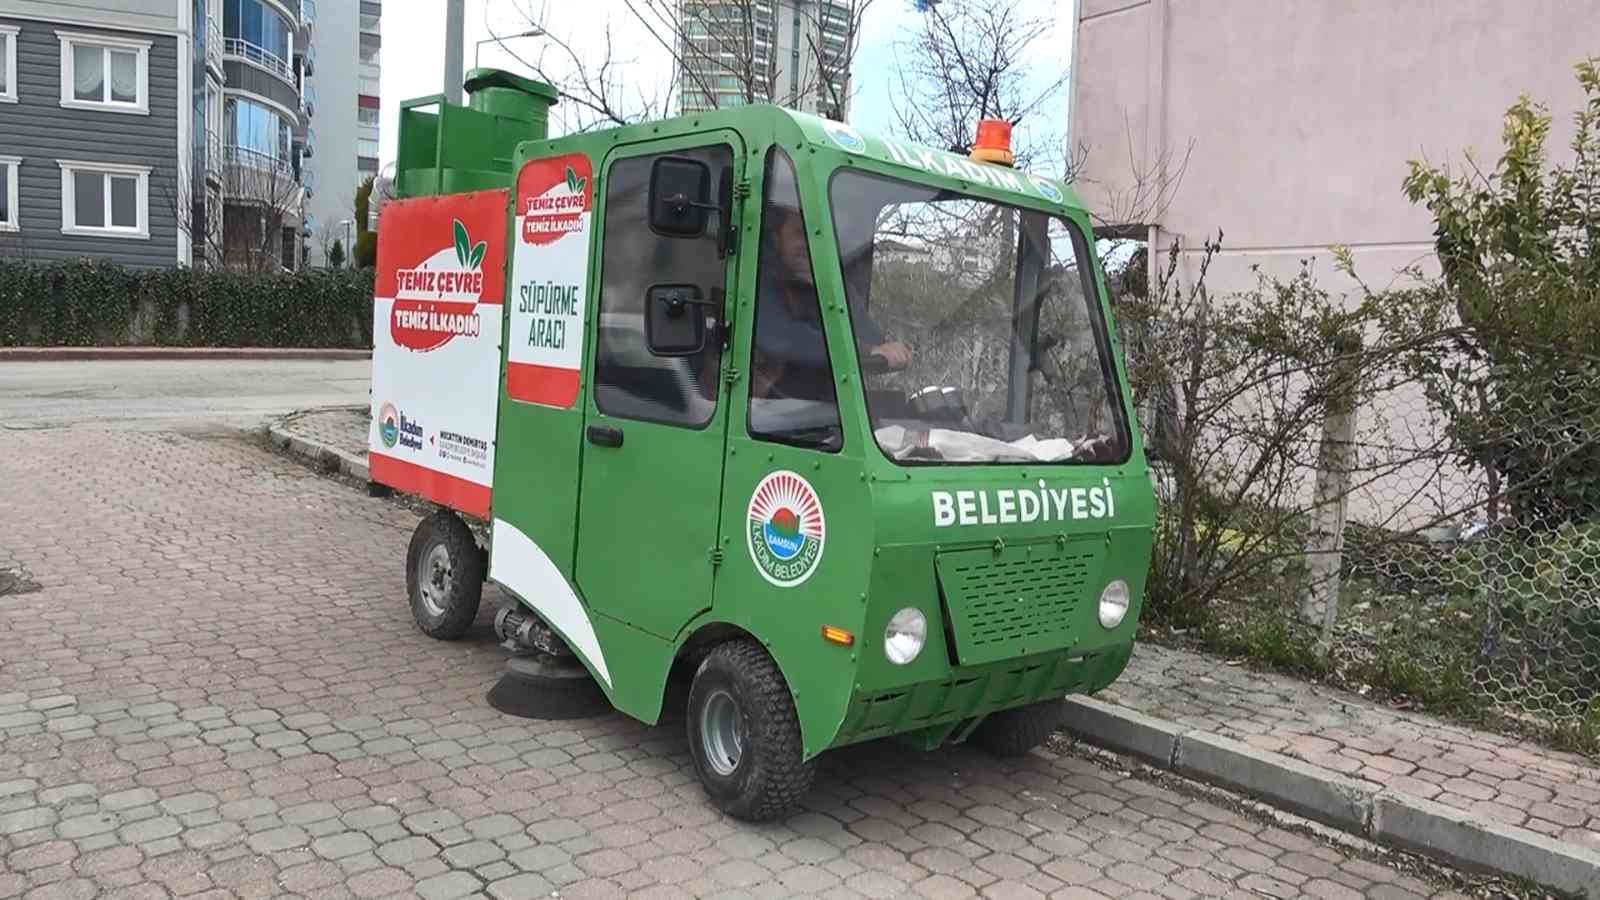 Belediye elektrikli süpürge aracı üretti
